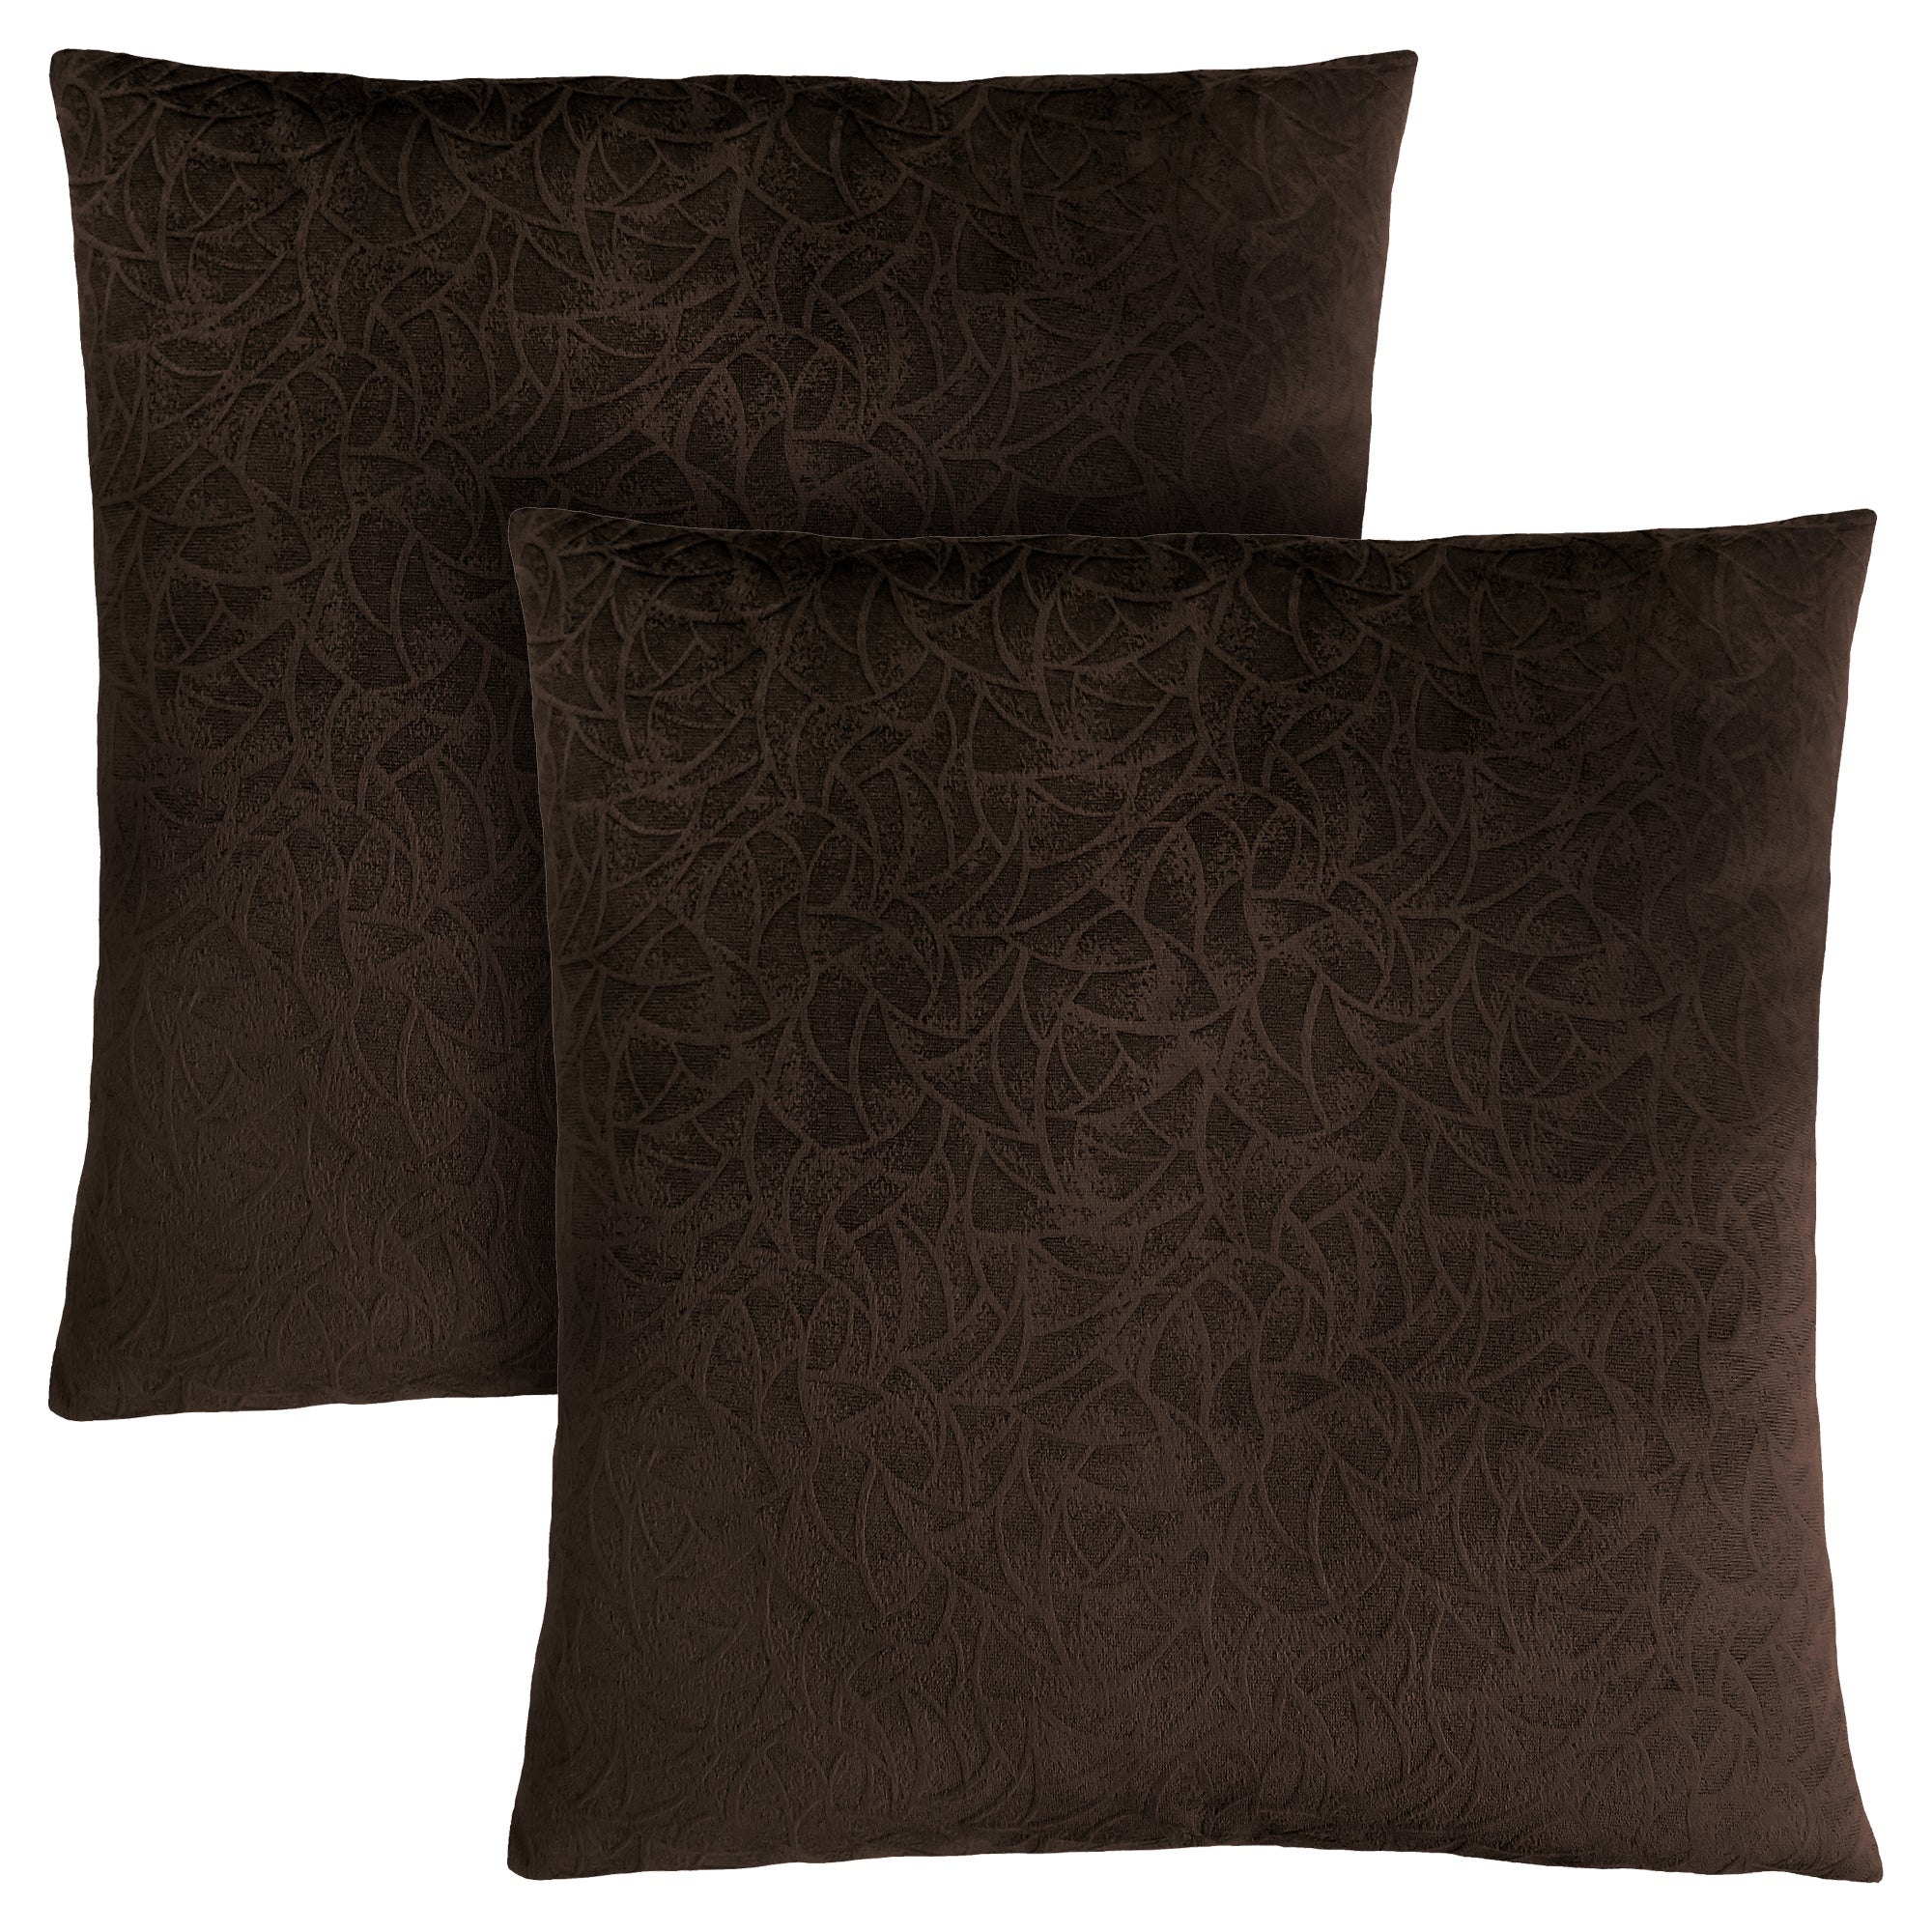 Pillow - 18X 18 / Dark Brown Floral Velvet / 2Pcs